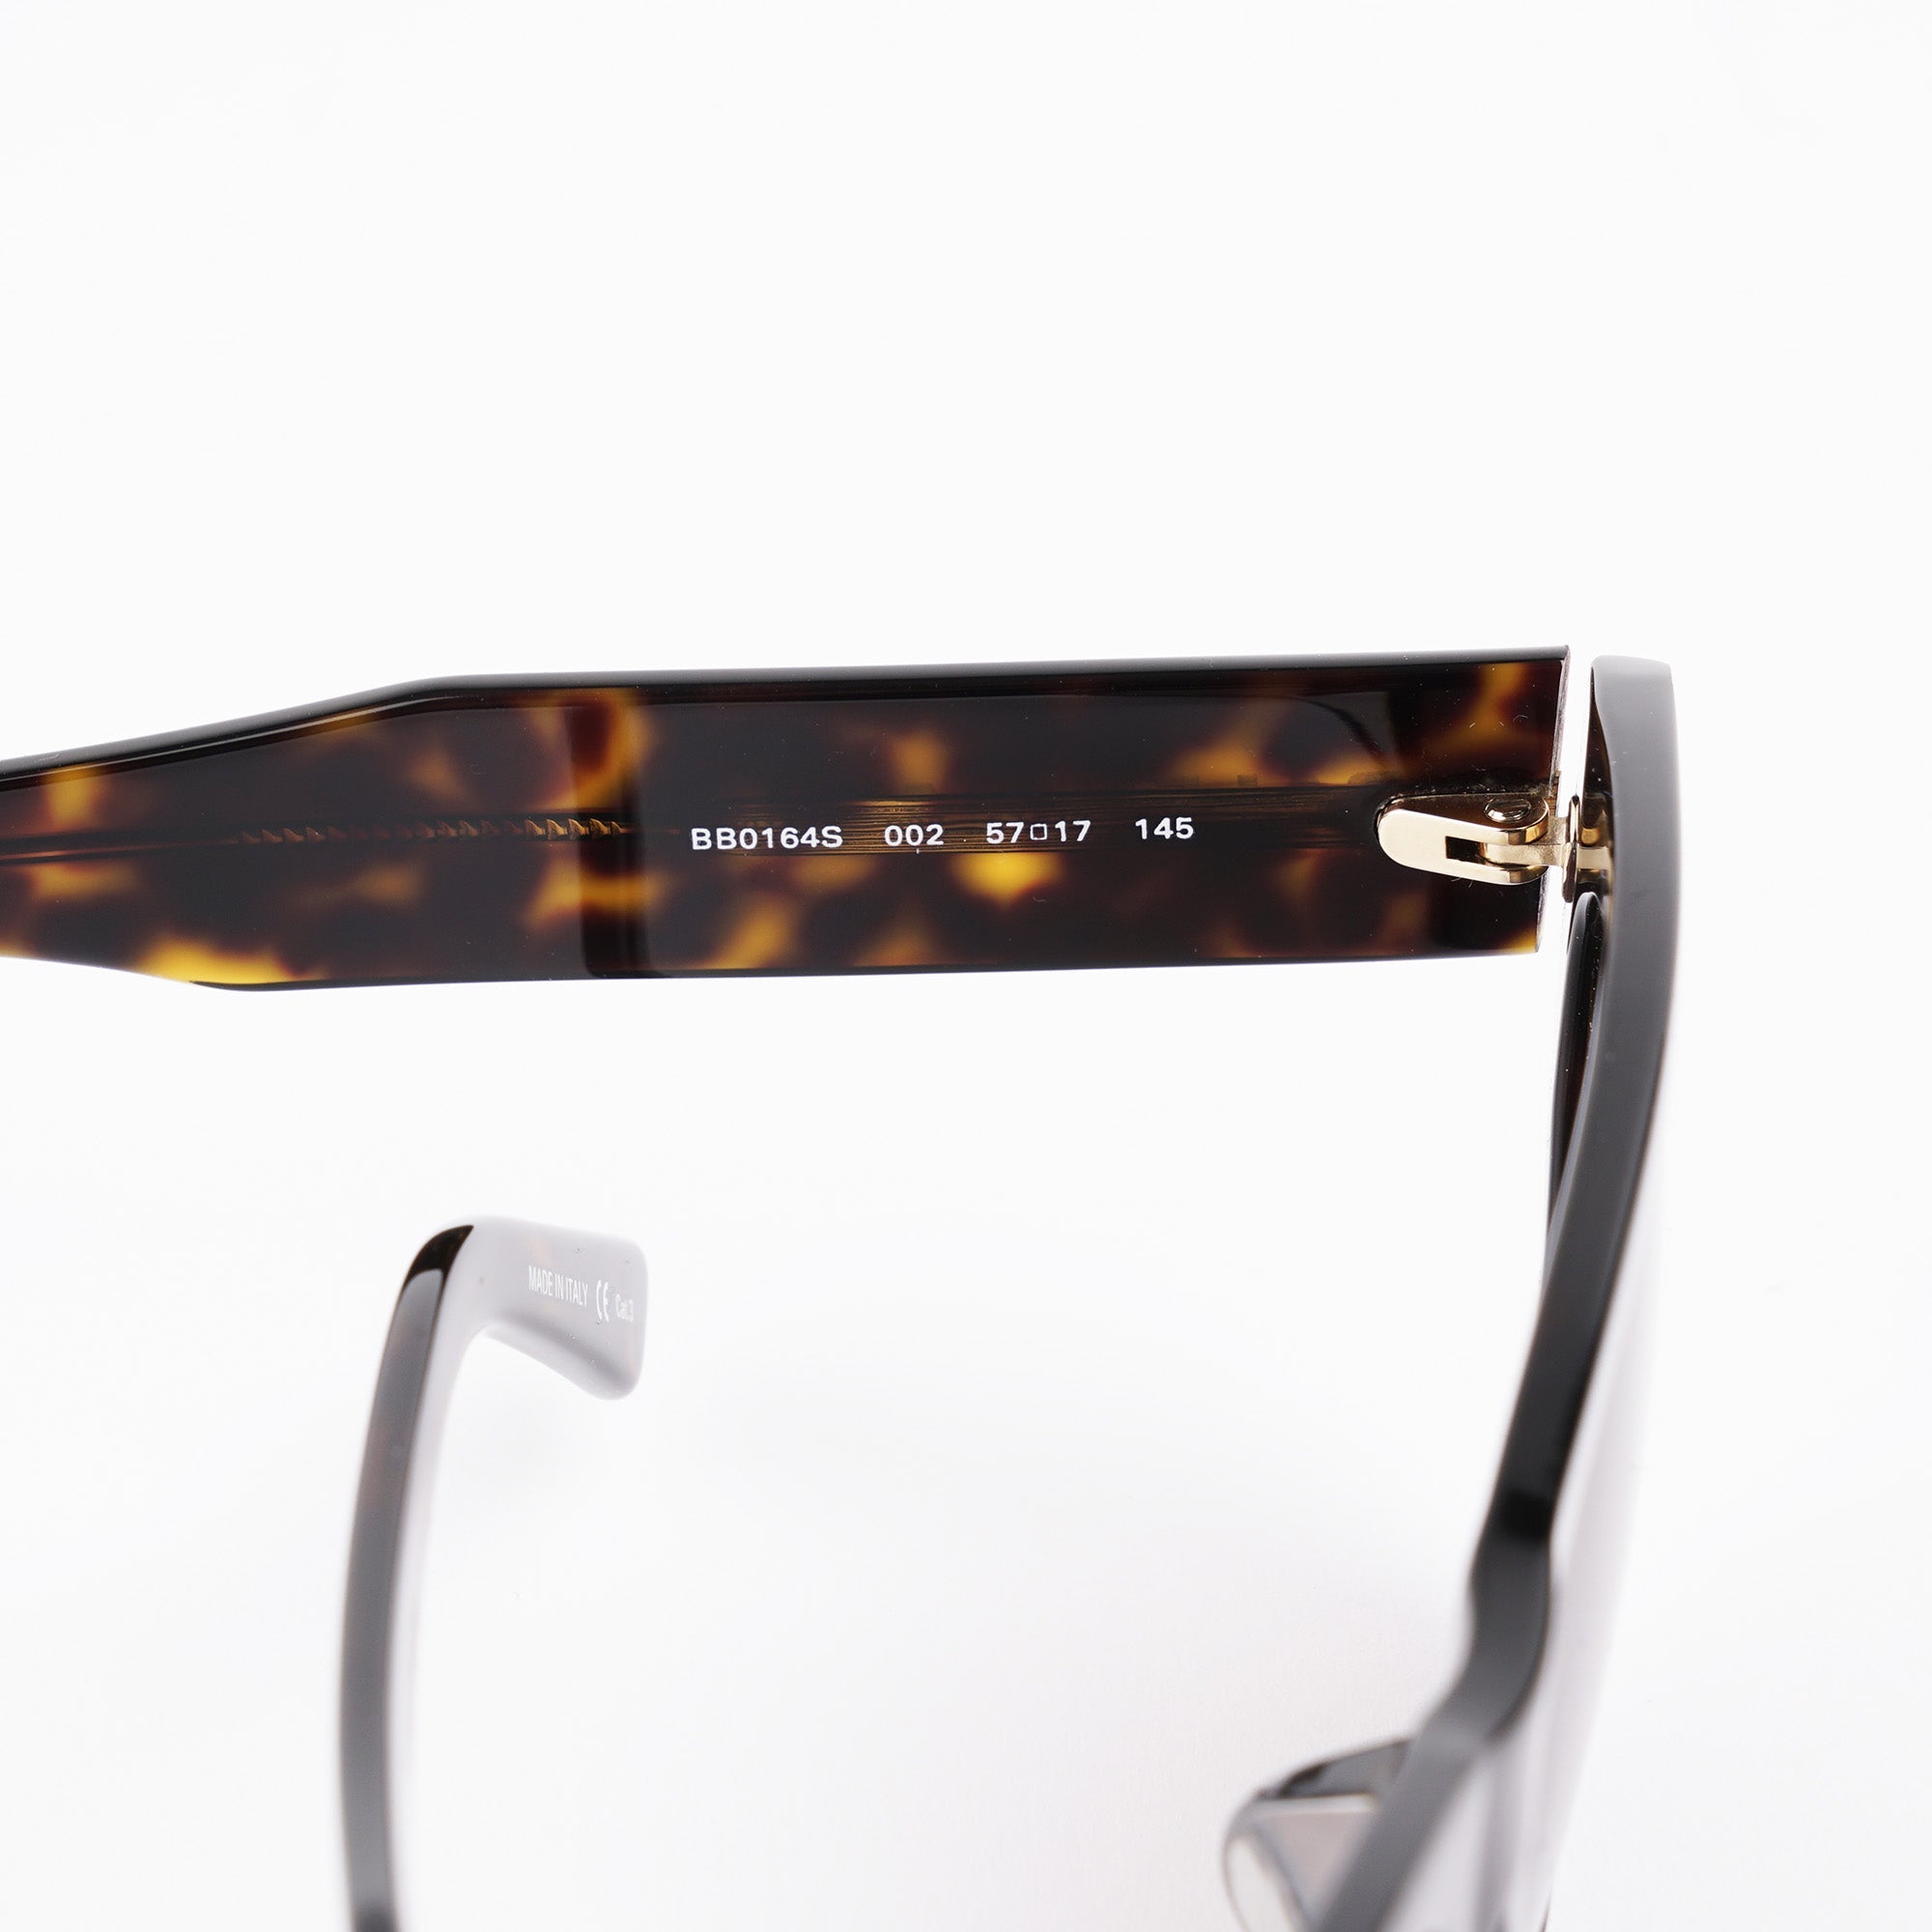 Rectangular Sunglasses - BALENCIAGA - Affordable Luxury image